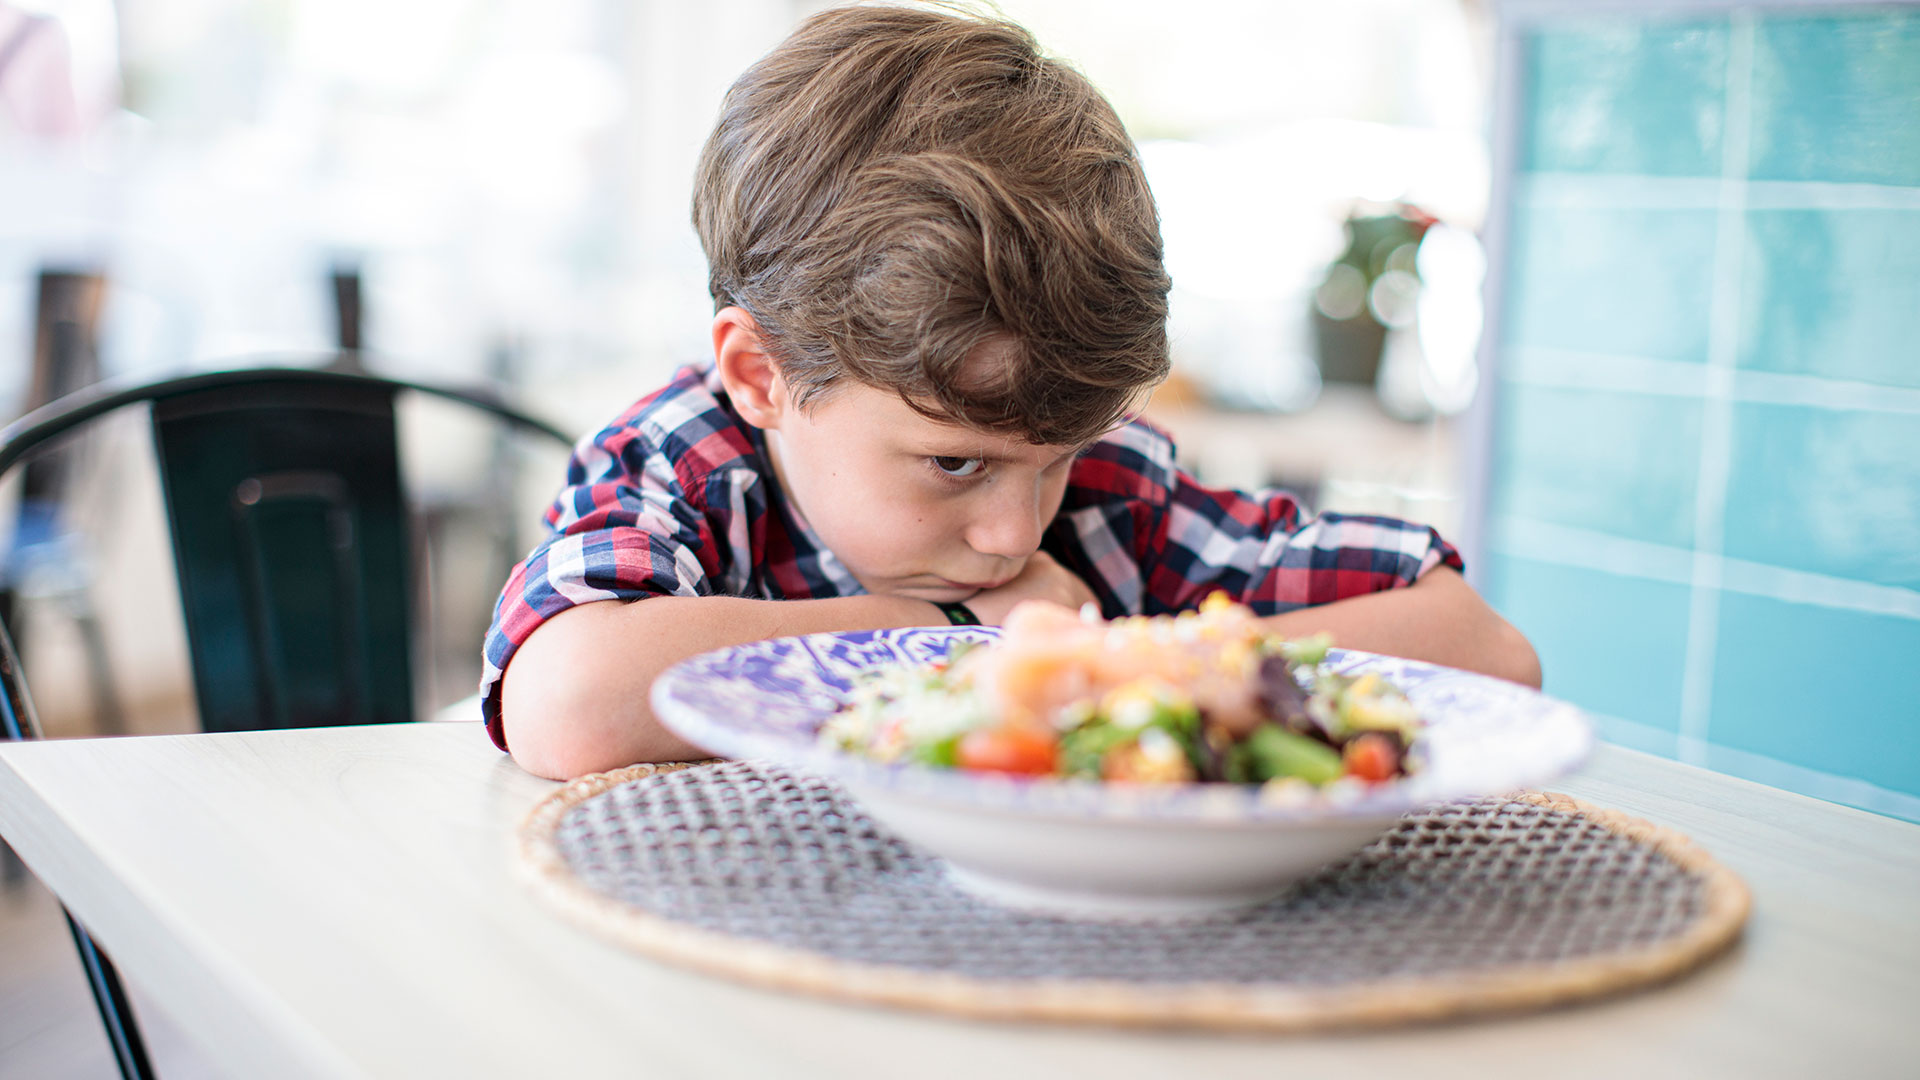 Estudios recientes aseguran que una dieta más nutritiva, rica en frutas y verduras se asociaron con un mejor bienestar mental en los niños (Getty)